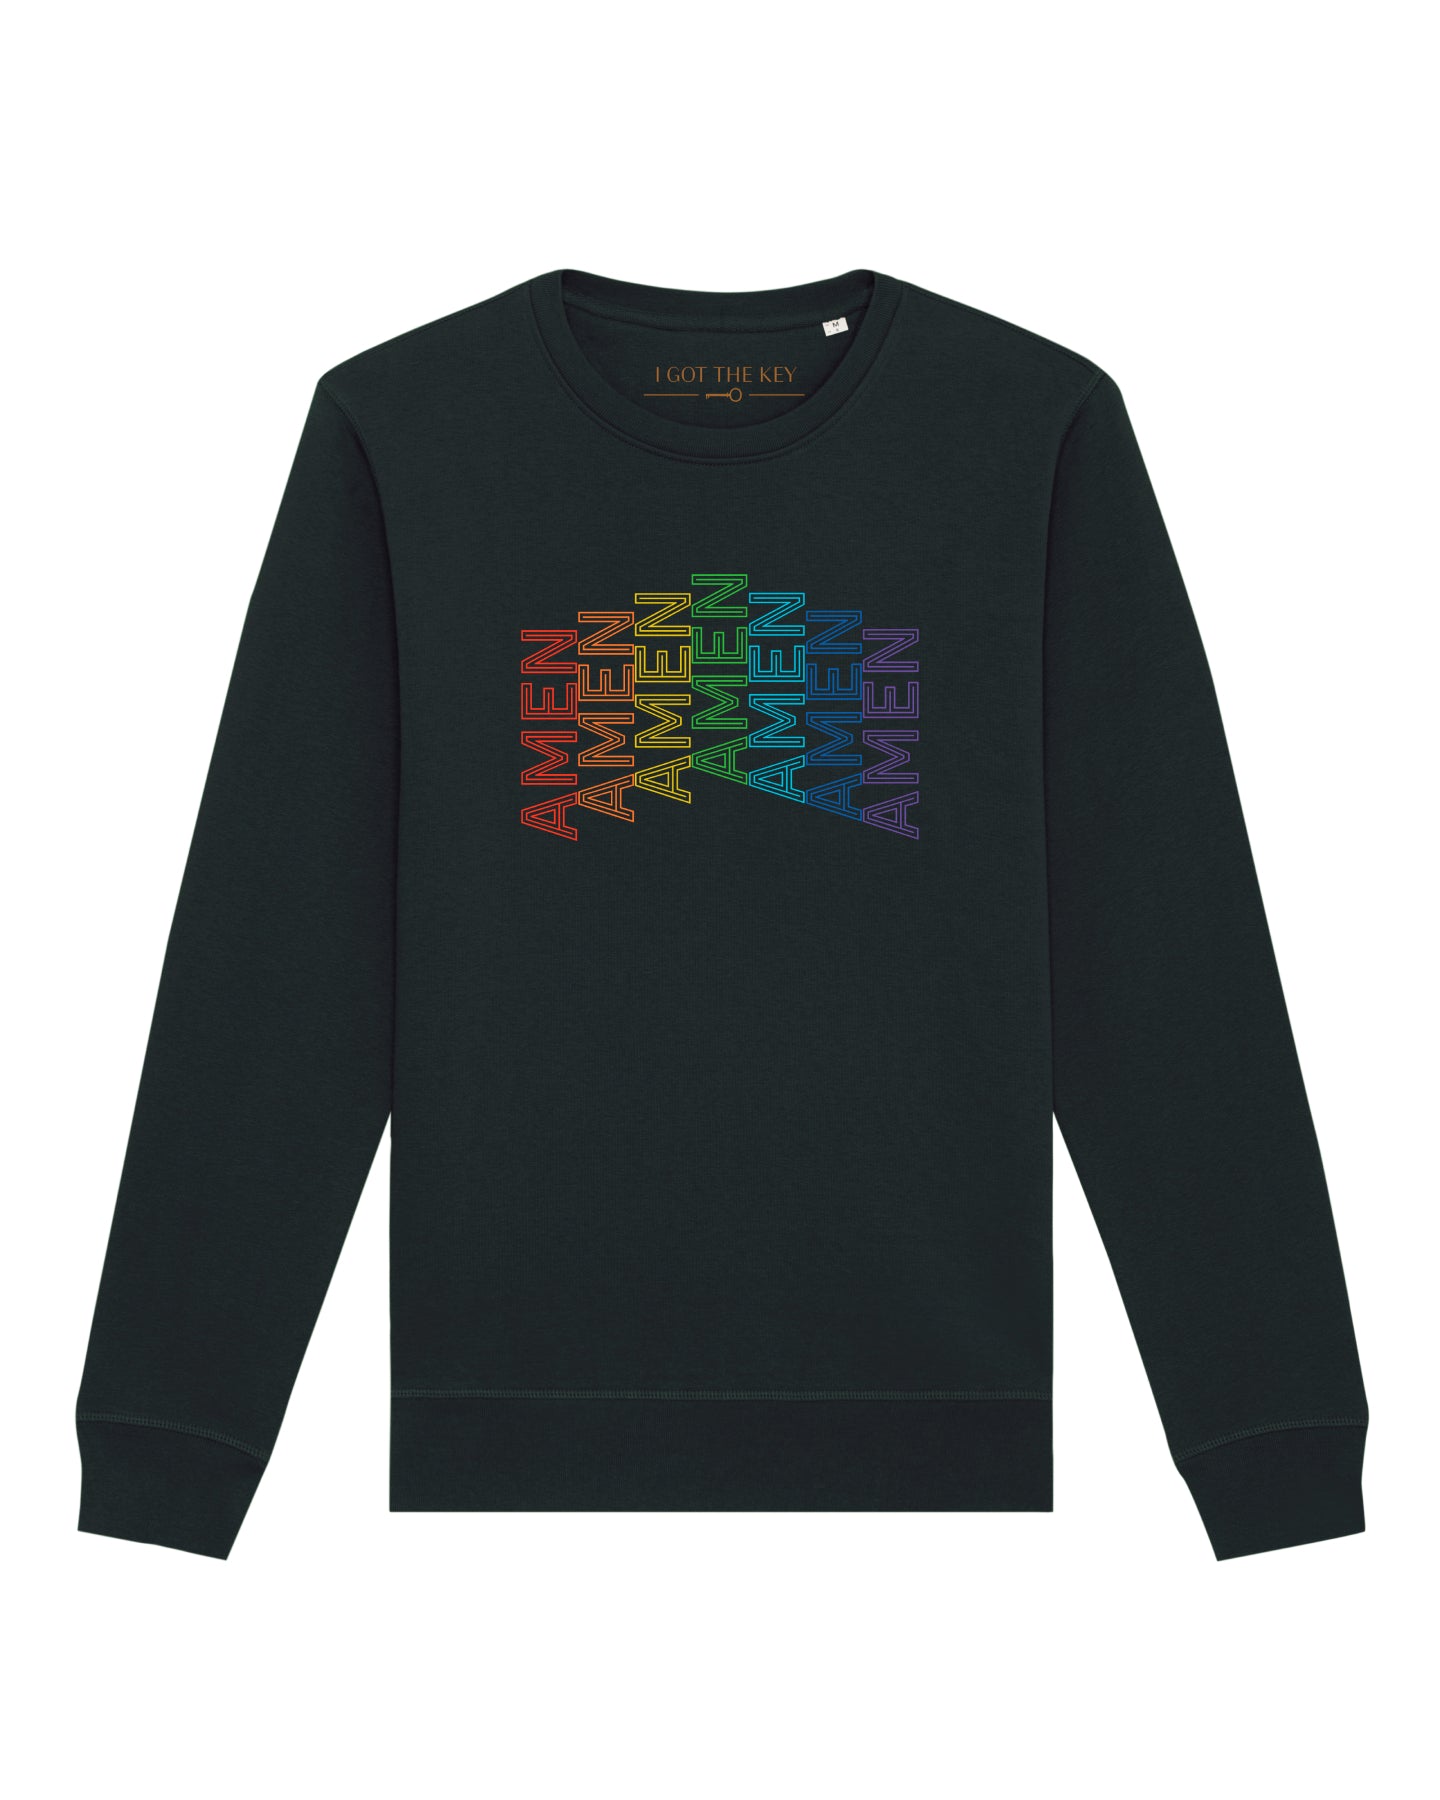 Schwarzes Sweatshirt mit AMEN Druck in Regenbogenfarben.